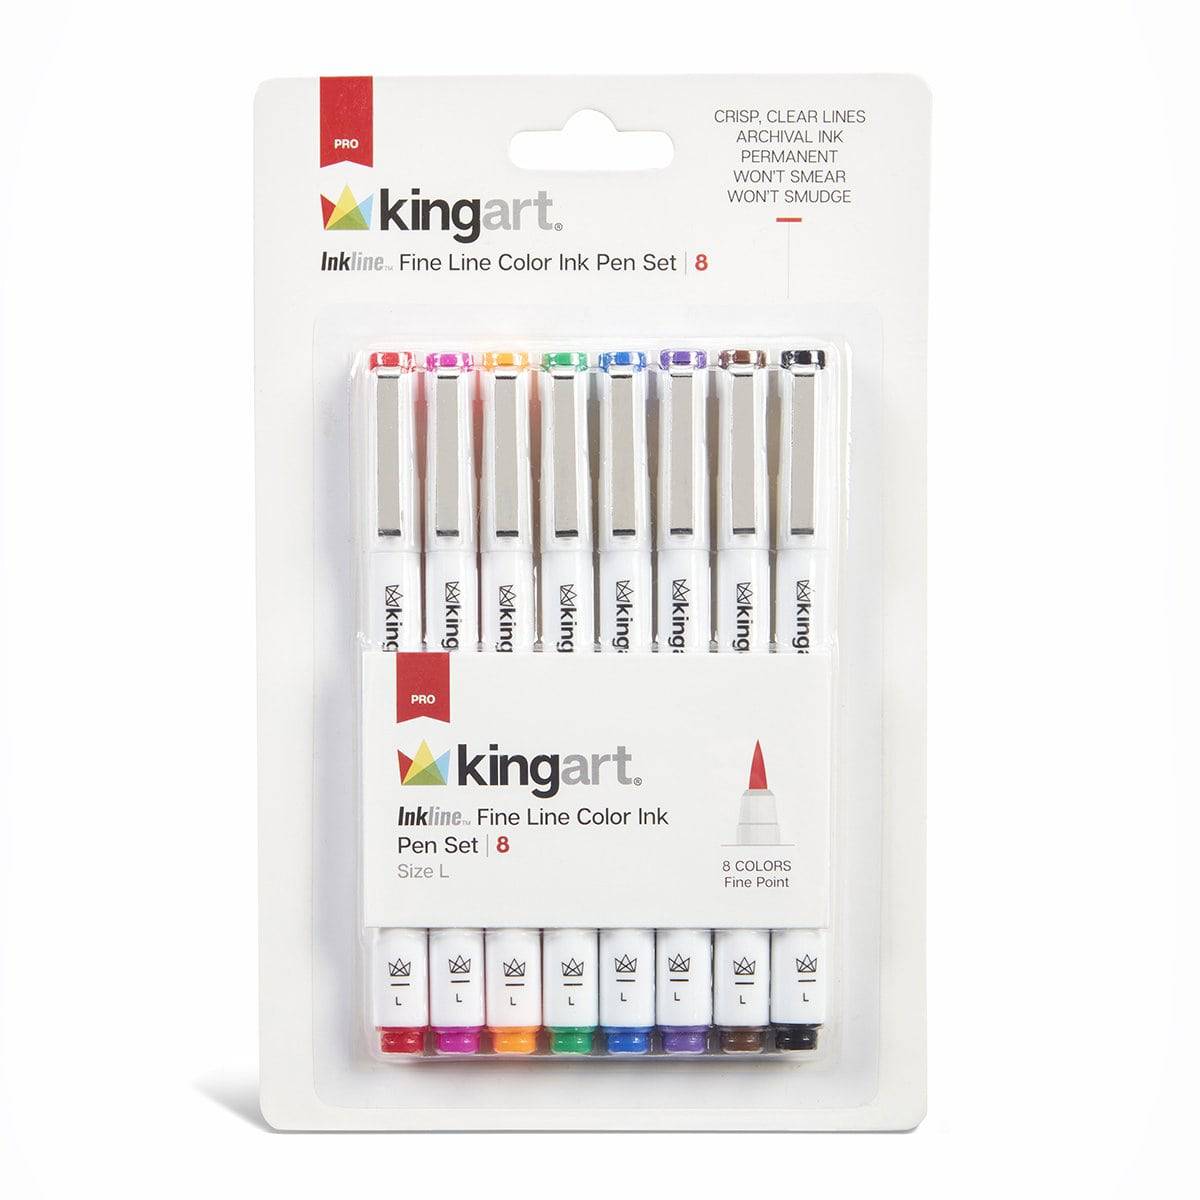 Fineline Ink Pens, set of 2 (22 and 21 gauge tips) – Artistic